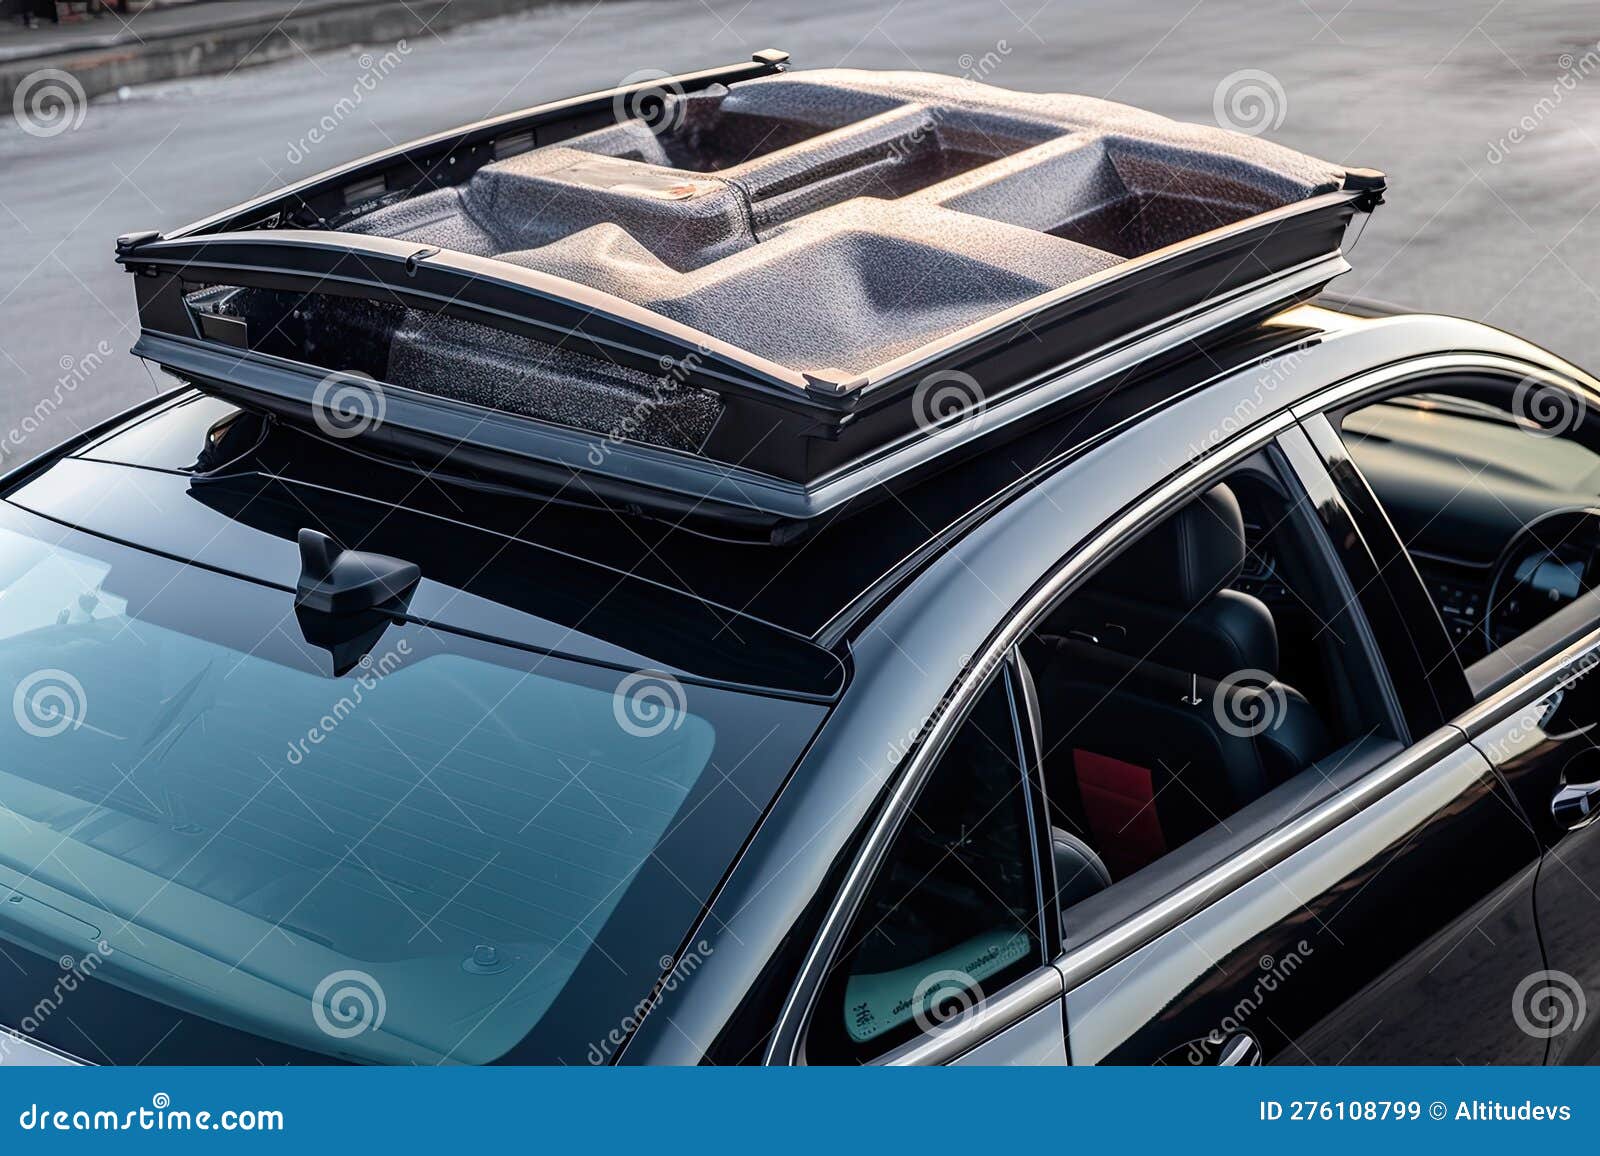 Auto Mit Sonnenschirm Und Lautsprechern Auf Dem Dach Für Den Antrieb Bereit  Stock Abbildung - Illustration von system, lautsprecher: 276108799